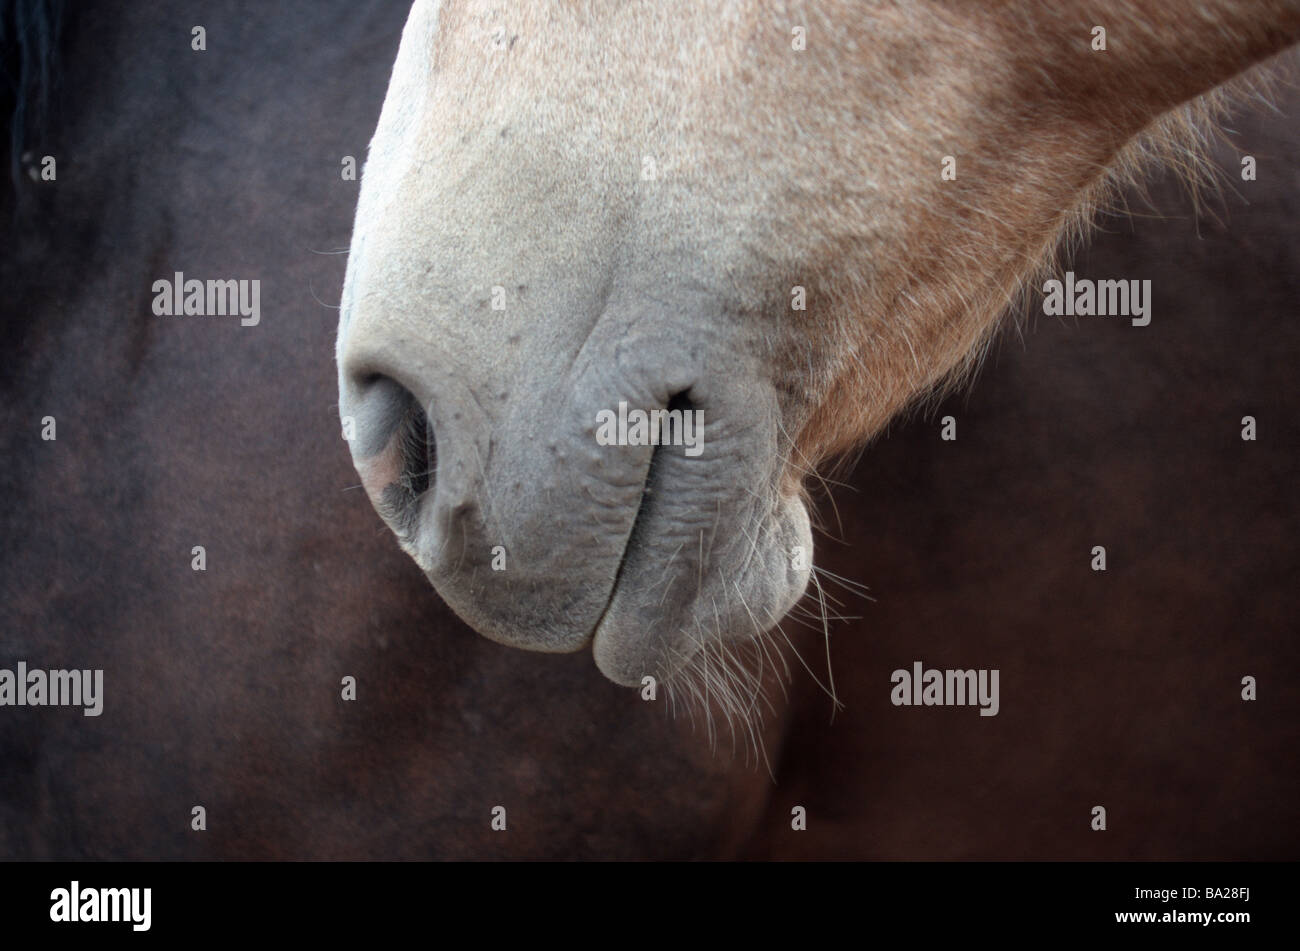 Profil de détails à tête de cheval mammifère animal Reitpferd-course course de chevaux cheval Tête bouche narines se détend tranquillement symbole de gauche Banque D'Images